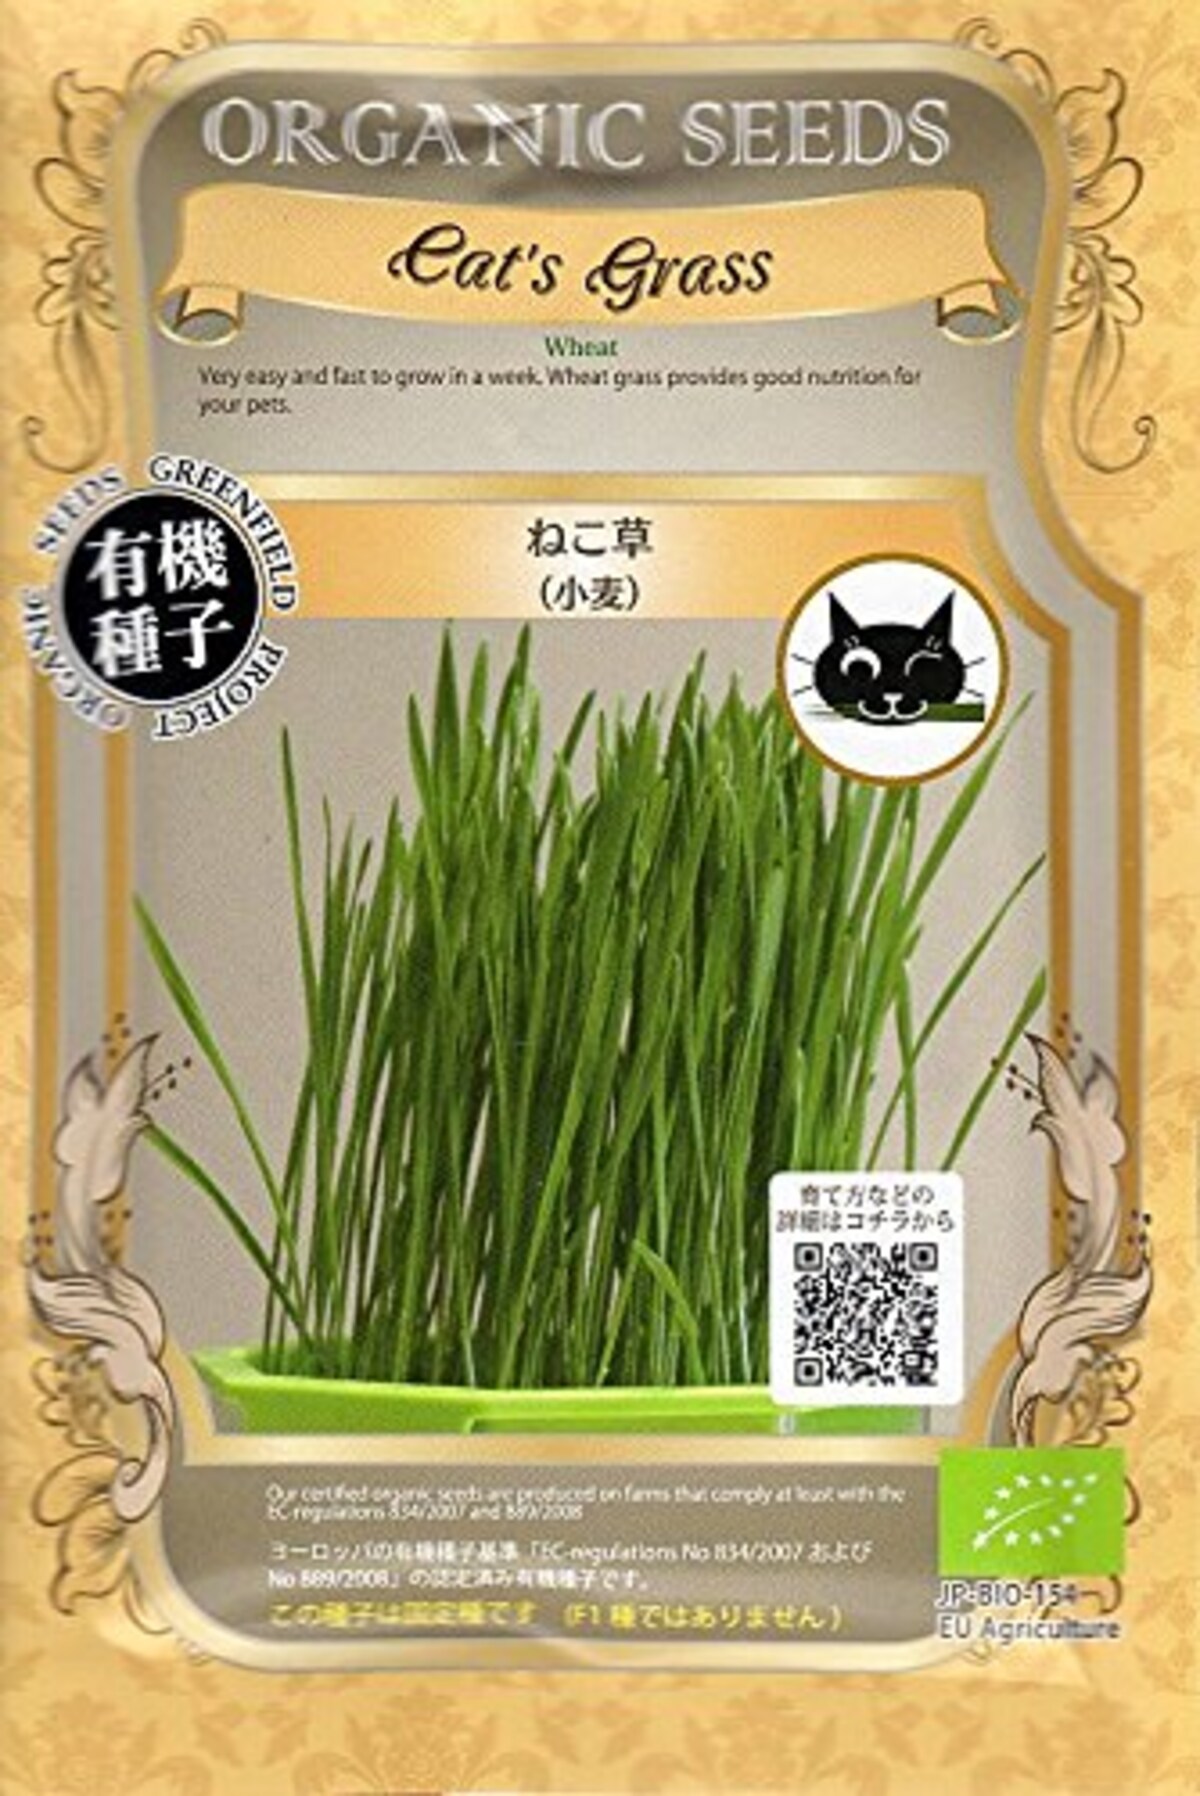 cat's grass